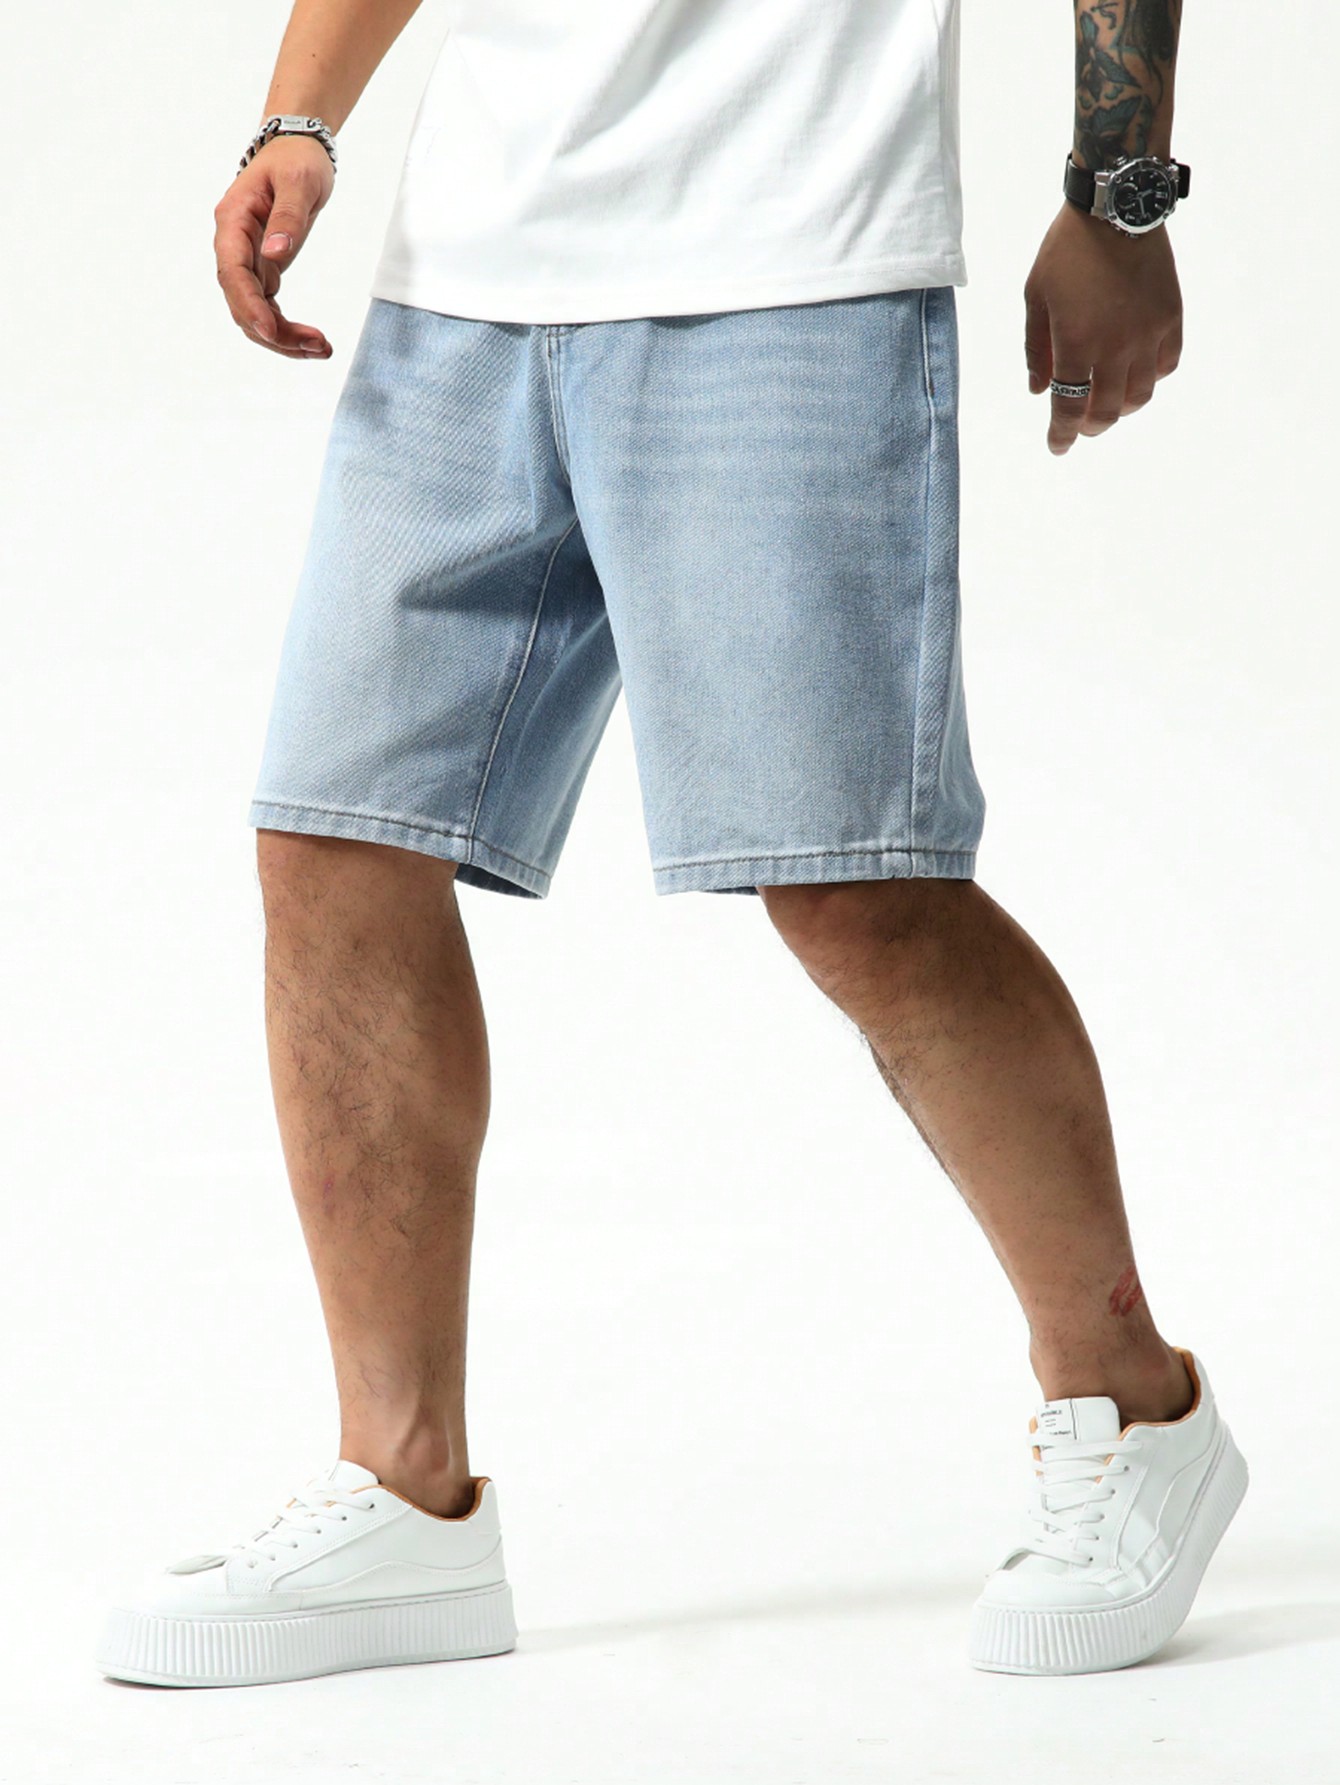 цена Мужские джинсовые шорты с карманами Manfinity EMRG, легкая стирка